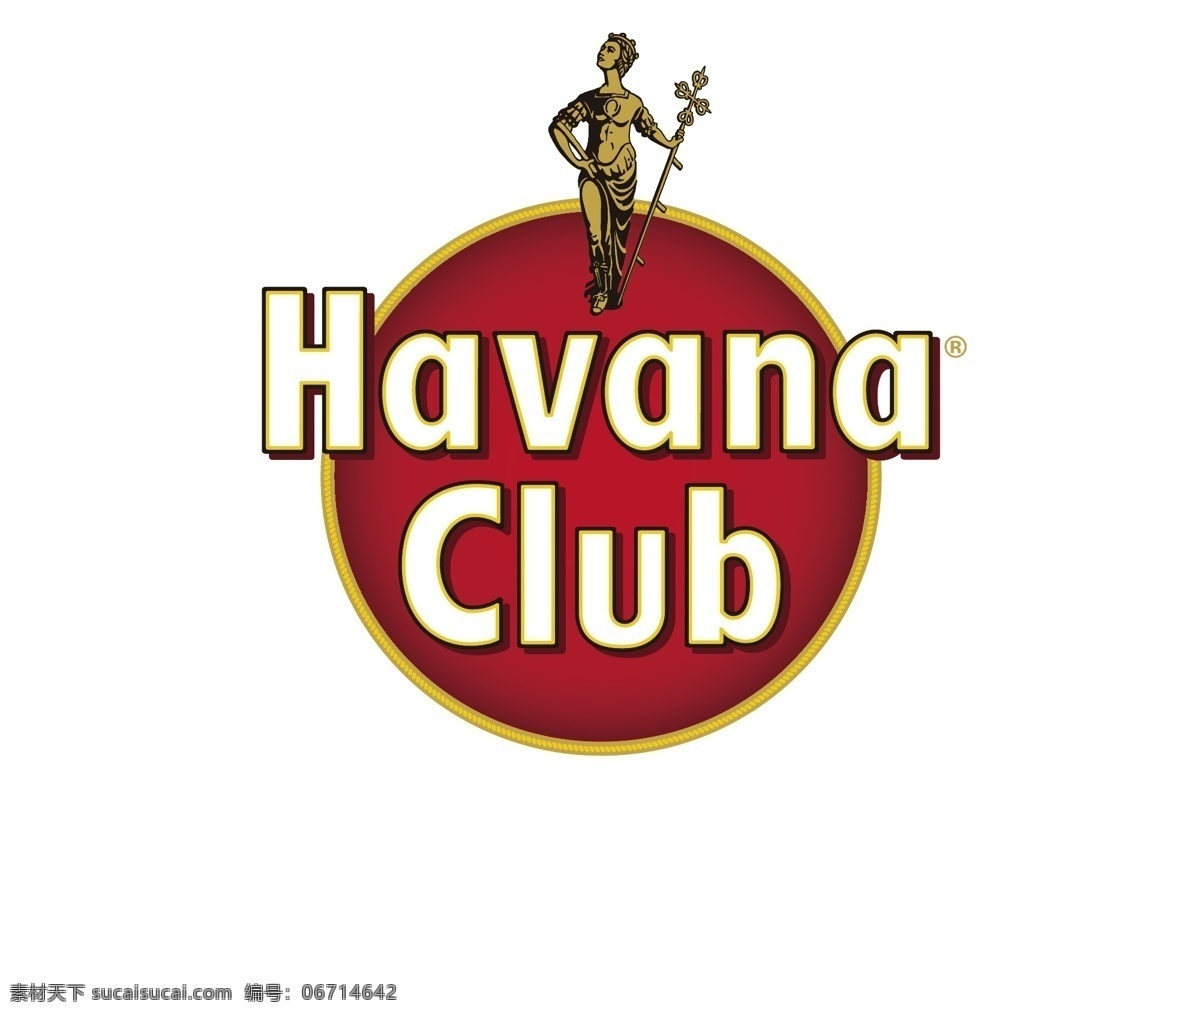 havana club 哈瓦那俱乐部 矢量logo 企业 logo 标志 标识标志图标 矢量 哈瓦那 俱乐部 白色